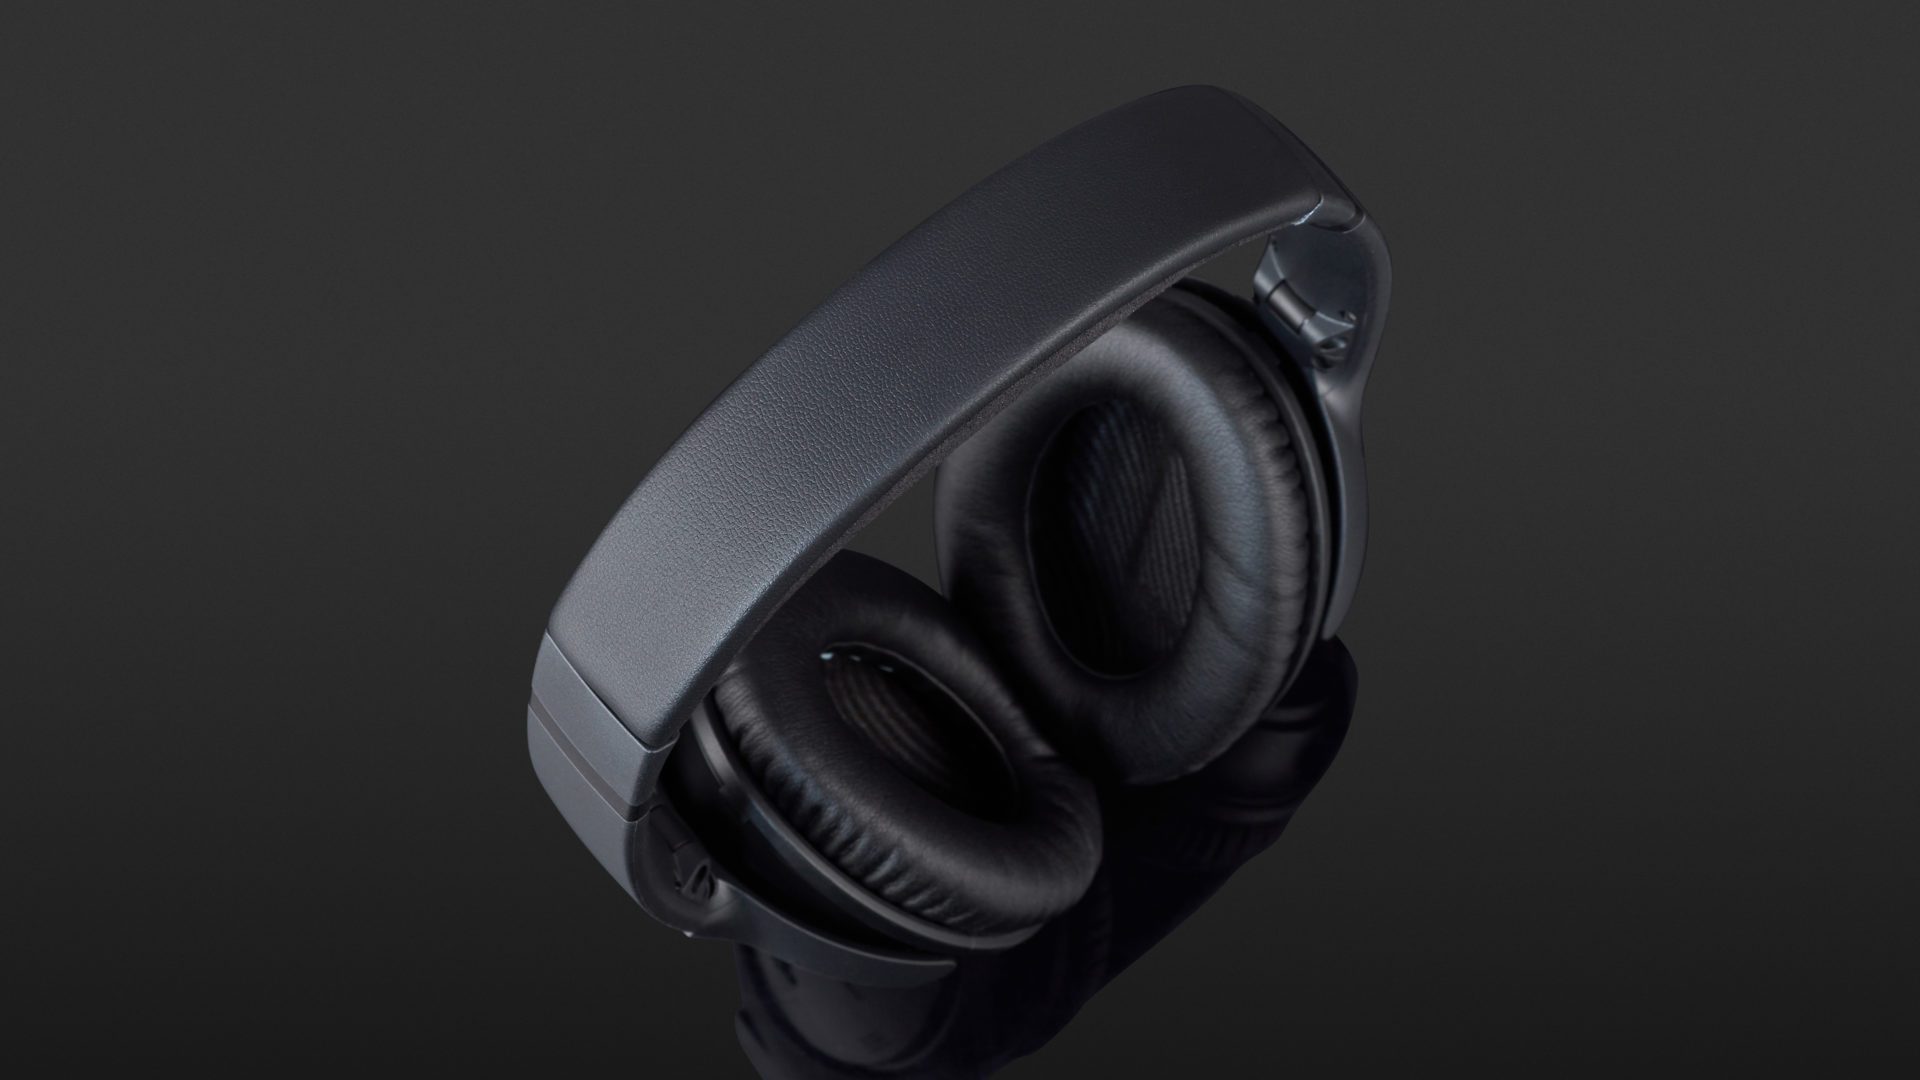 Bose QuietComfort 35 II Review | headphonecheck.com